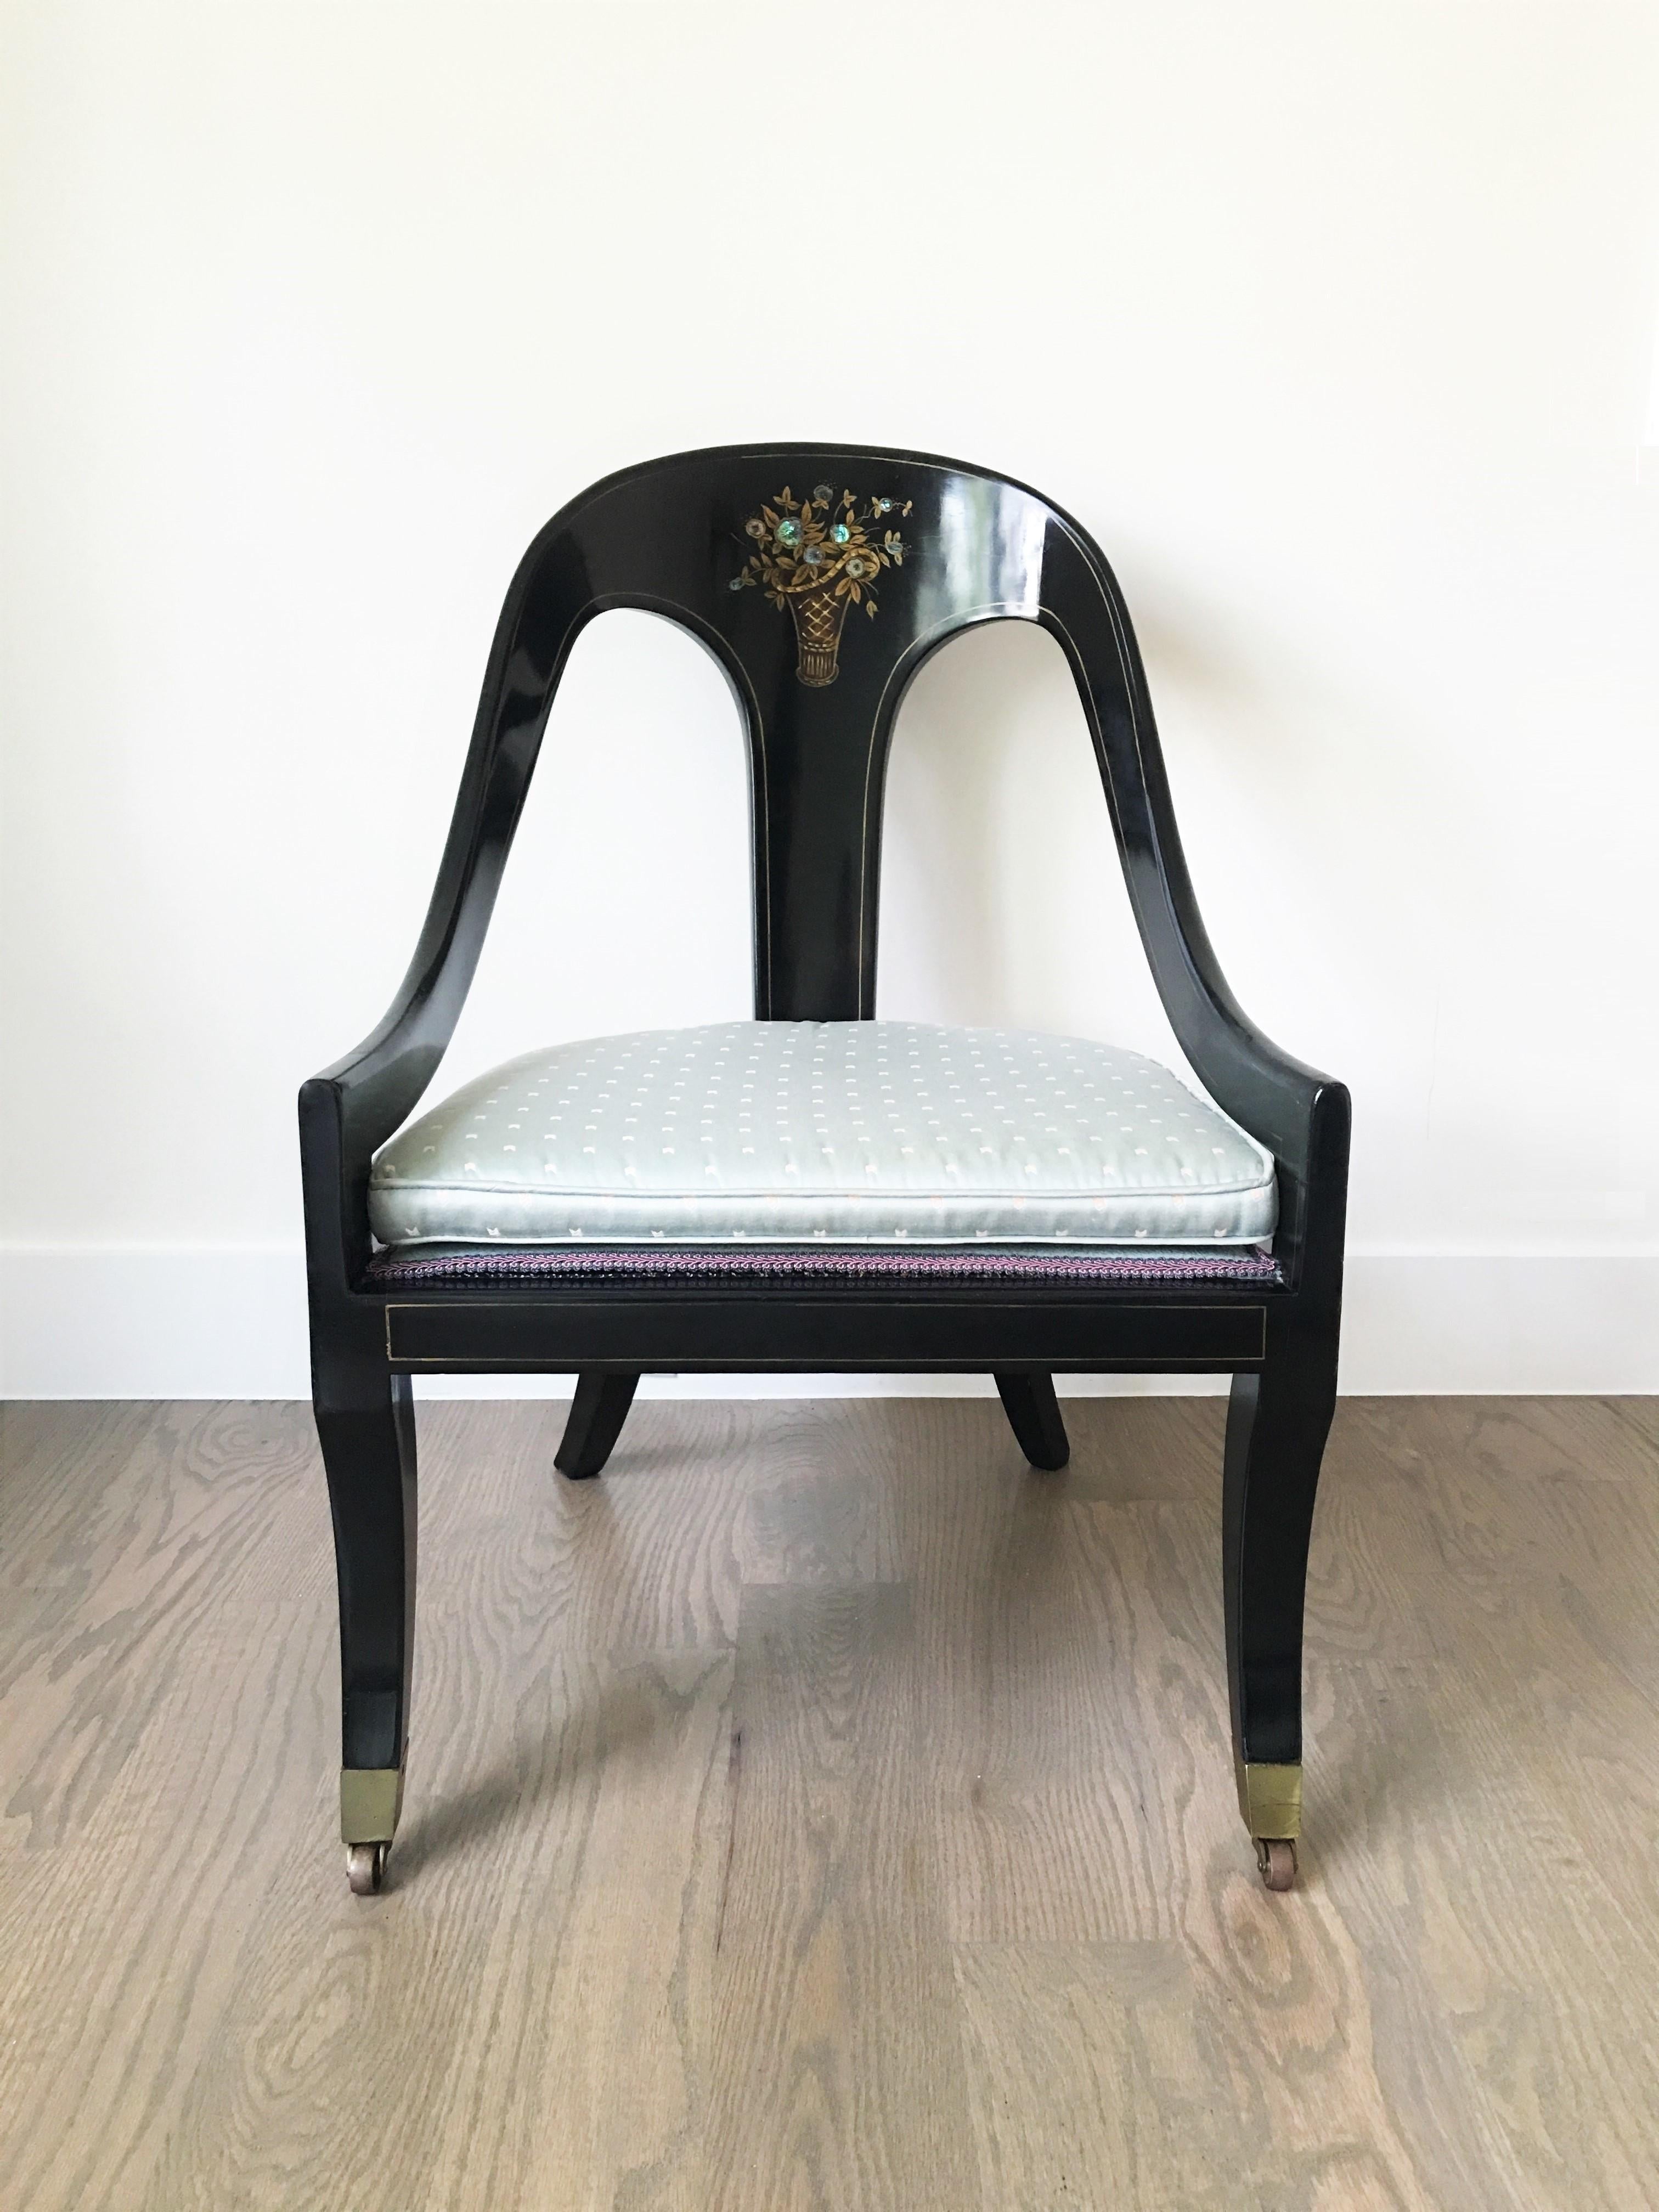 Paar Stühle mit Löffelrücken im Regency-Stil. Die Stühle haben schwarz lackierte Gestelle mit einem gewölbten Wappen über einer vertikalen Leiste mit einem floralen Perlmuttmuster, das von nach unten geschwungenen Armlehnen flankiert wird.